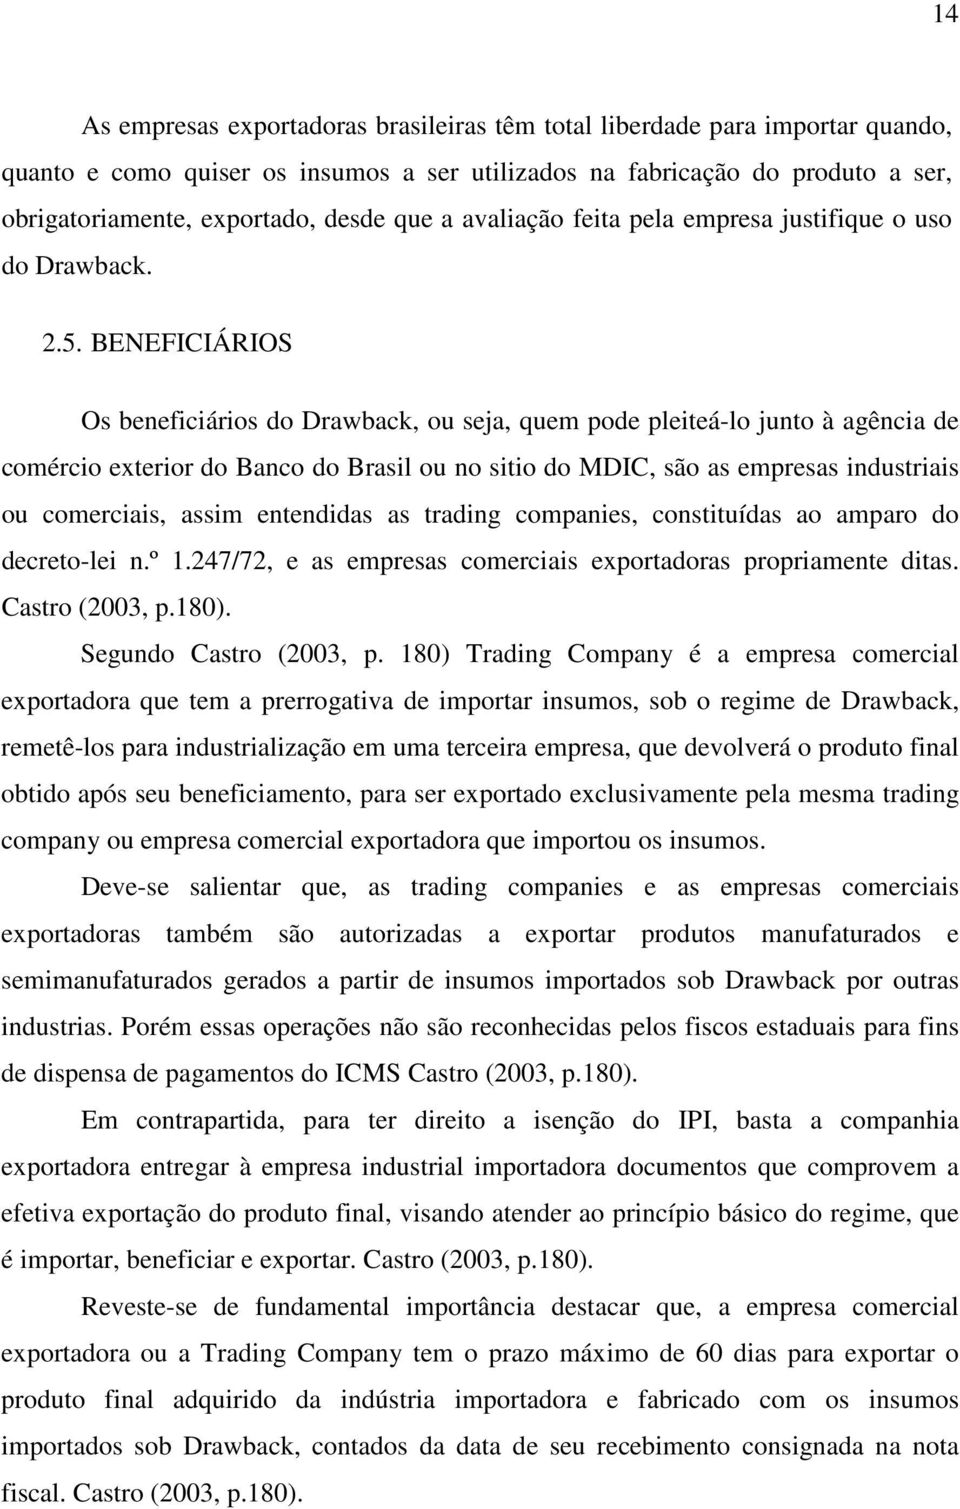 BENEFICIÁRIOS Os beneficiários do Drawback, ou seja, quem pode pleiteá-lo junto à agência de comércio exterior do Banco do Brasil ou no sitio do MDIC, são as empresas industriais ou comerciais, assim